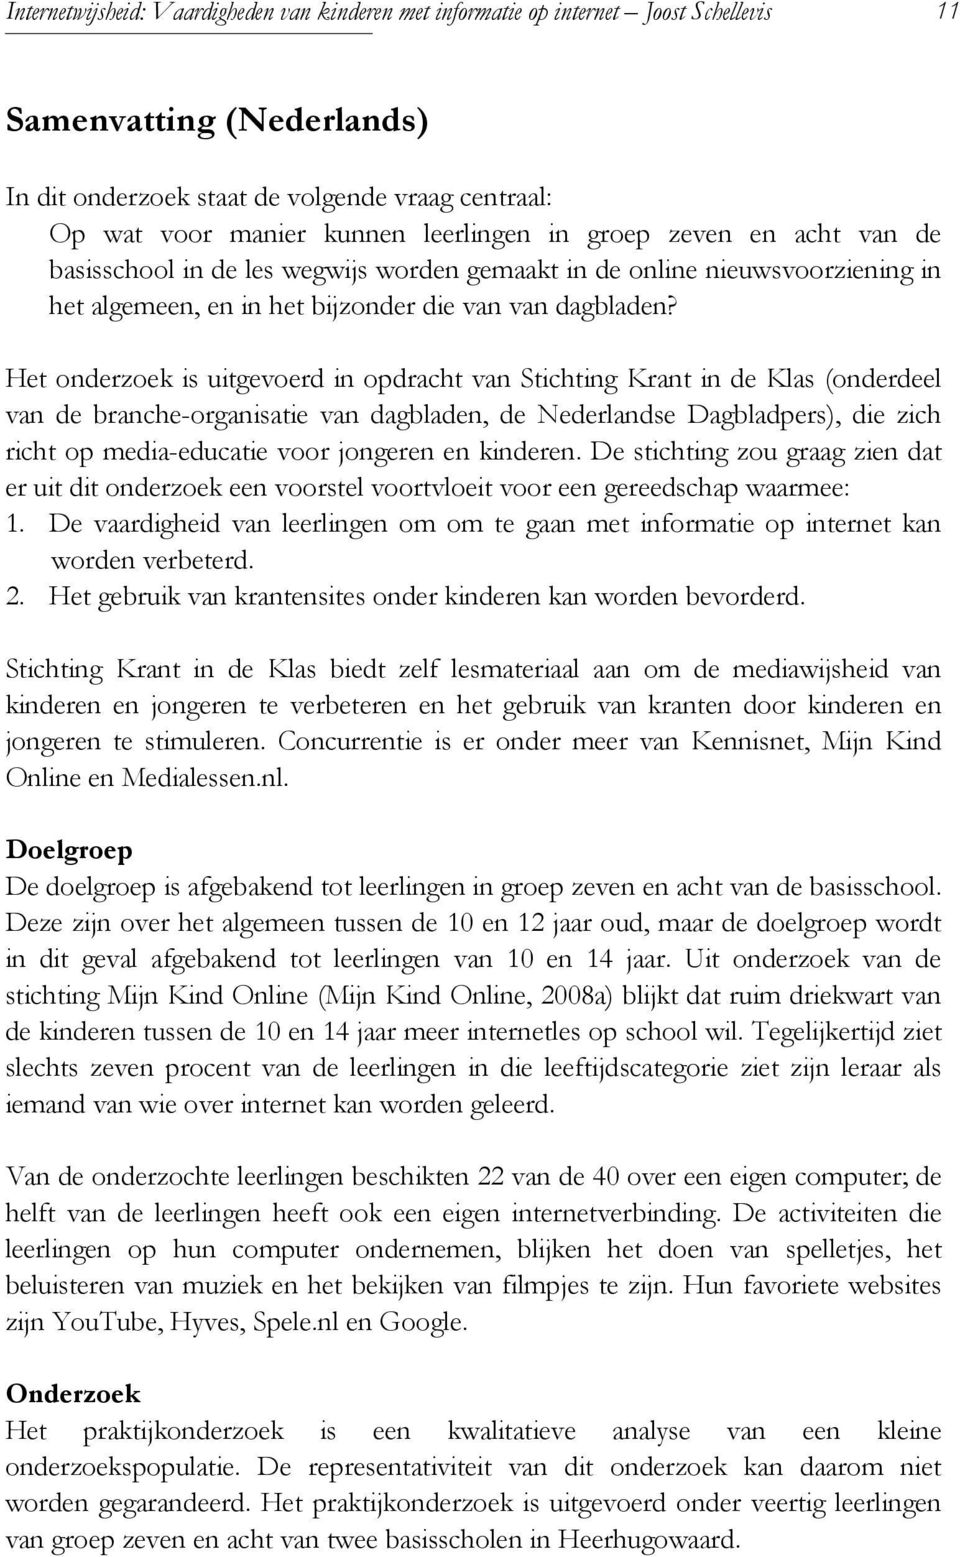 Het onderzoek is uitgevoerd in opdracht van Stichting Krant in de Klas (onderdeel van de branche-organisatie van dagbladen, de Nederlandse Dagbladpers), die zich richt op media-educatie voor jongeren